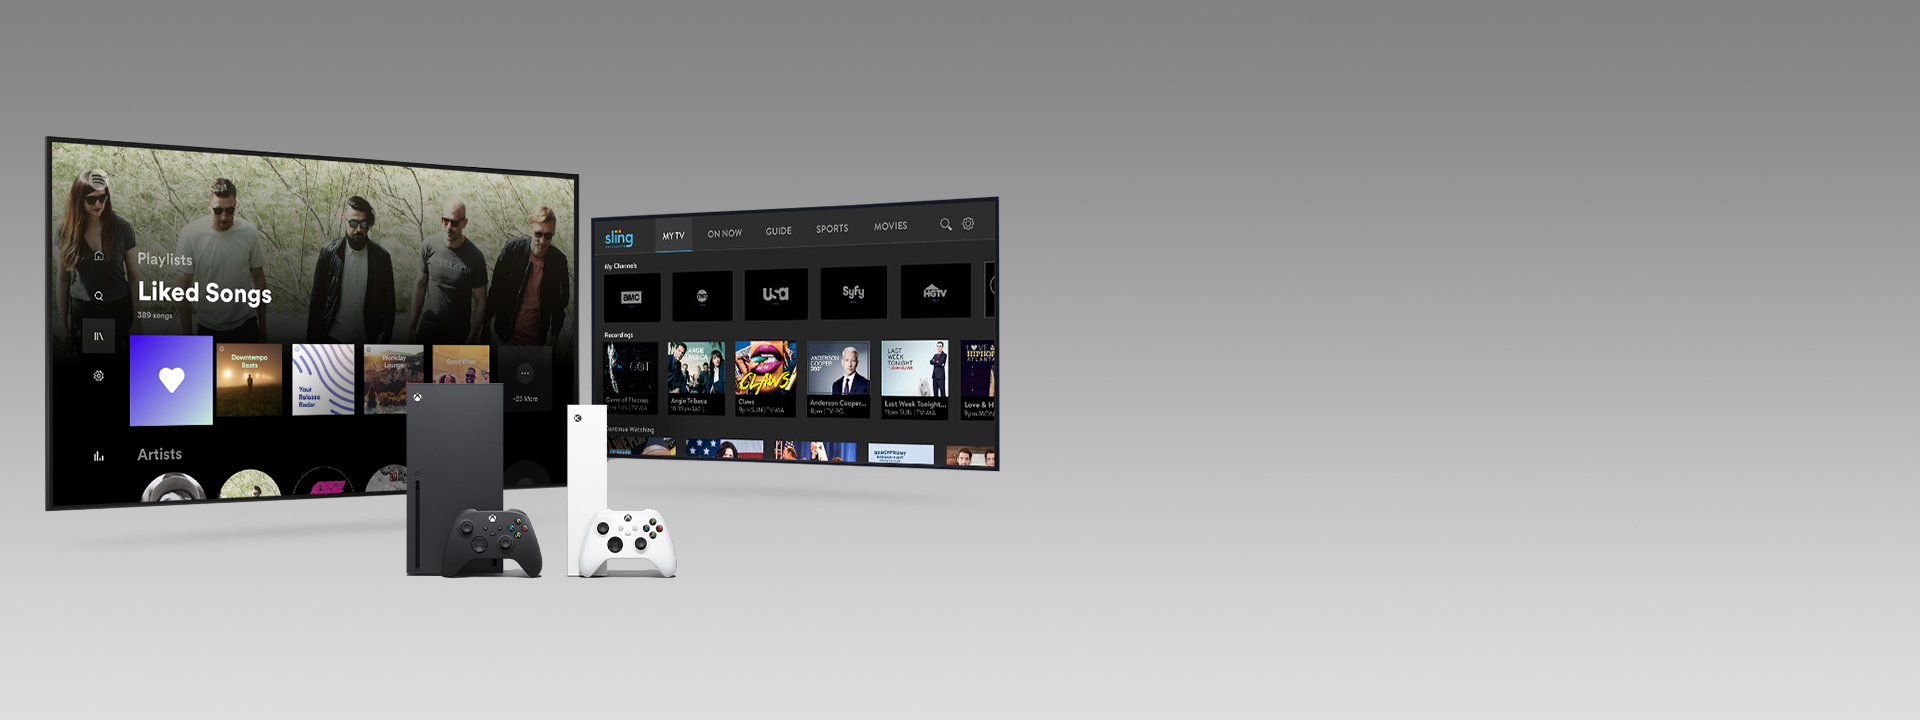 Xbox Series X és Series S konzol kontrollerekkel két tévéképernyő előtt, melyeken alkalmazások kezelőfelülete láthatók.